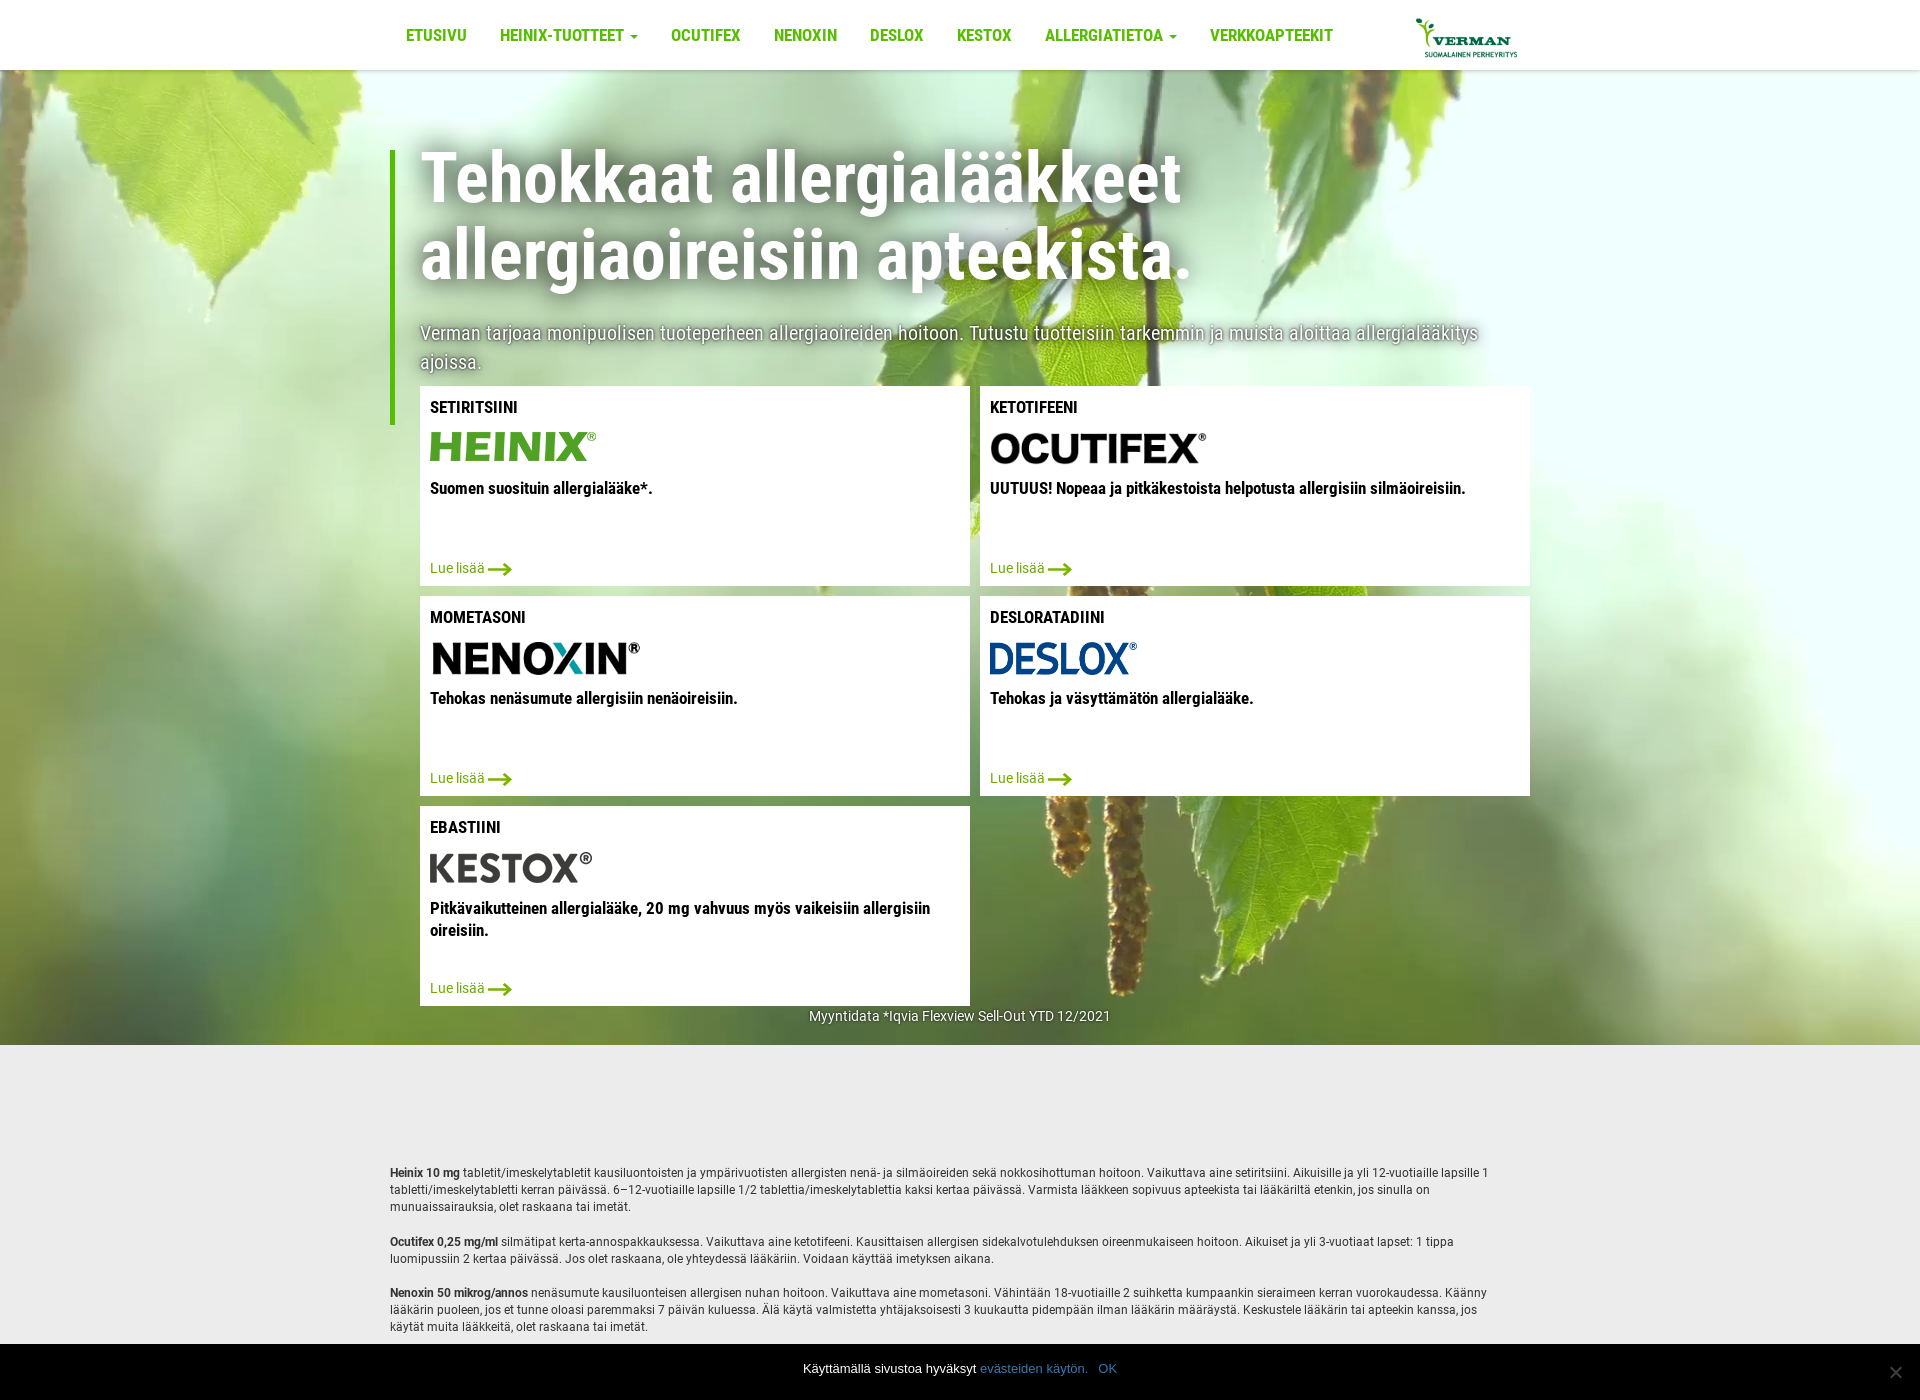 Näyttökuva allergiatietoa.fi